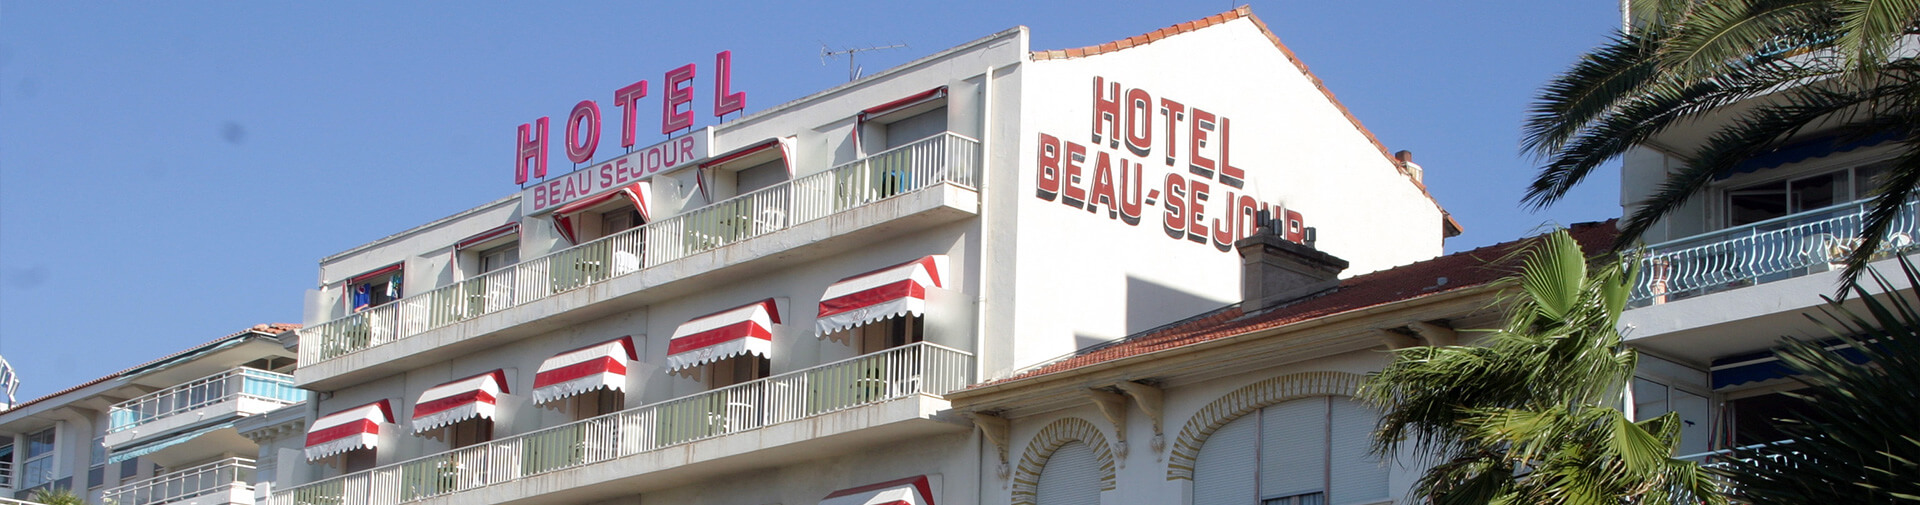 photo de la facade de l'hotel Beau Sejour